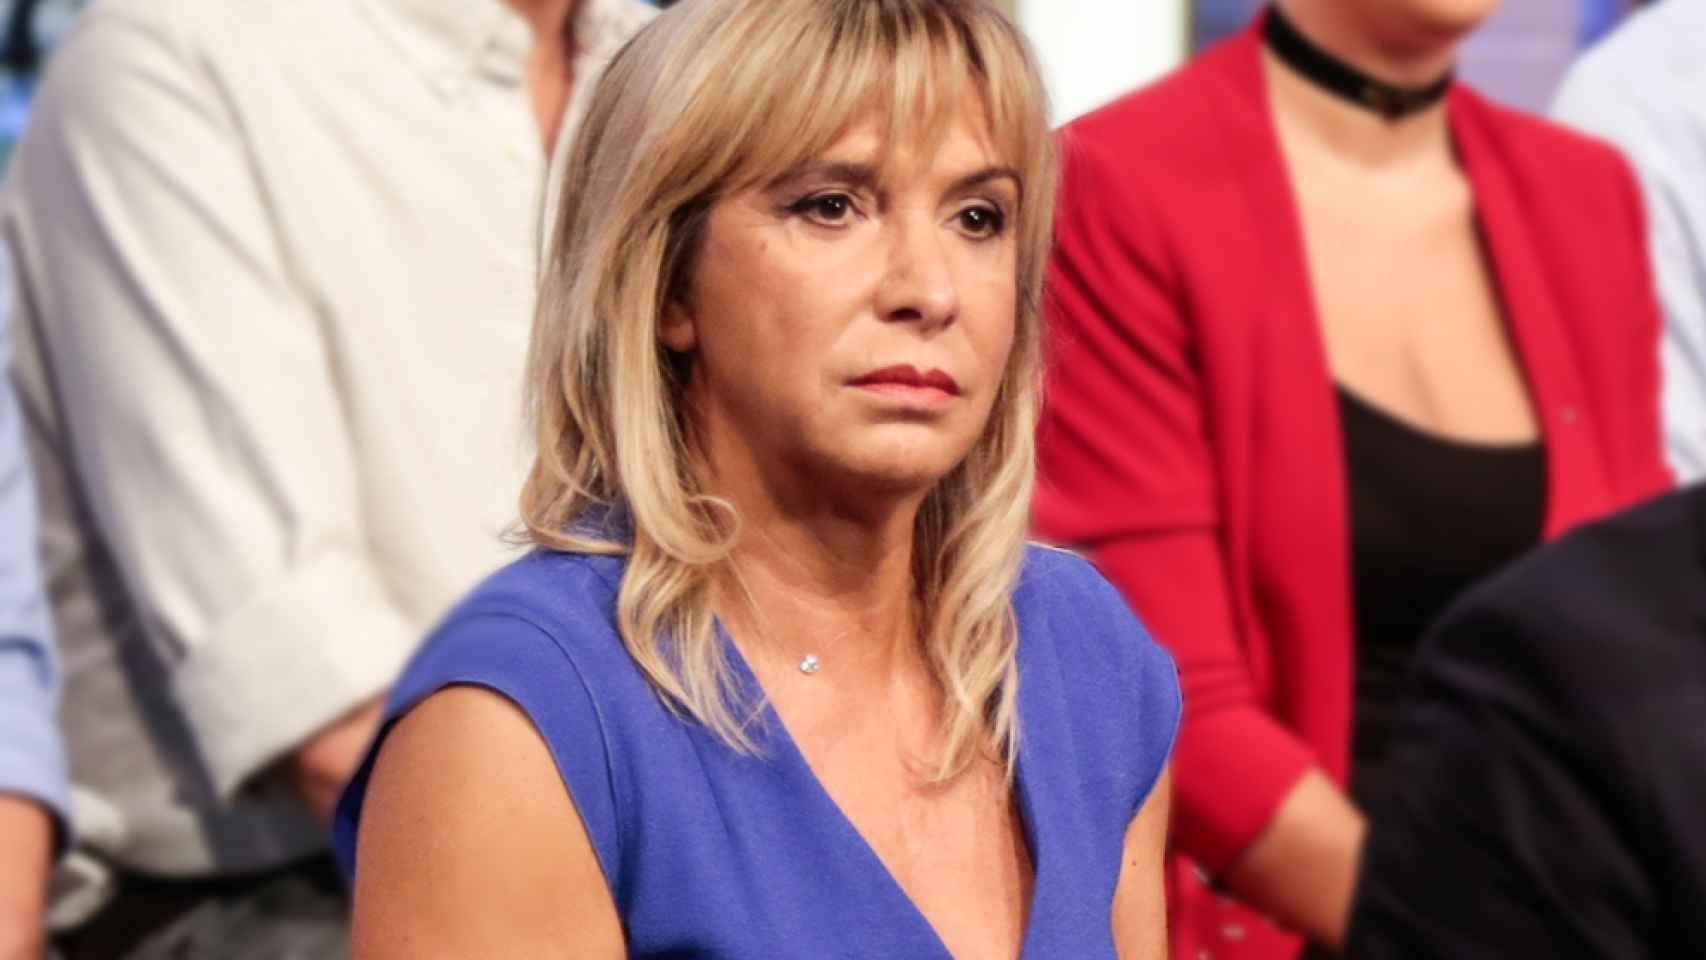 ¿Conflicto de intereses de TVE en Eurovisión? La hija de Toñi Prieto, en el equipo de Manel Navarro